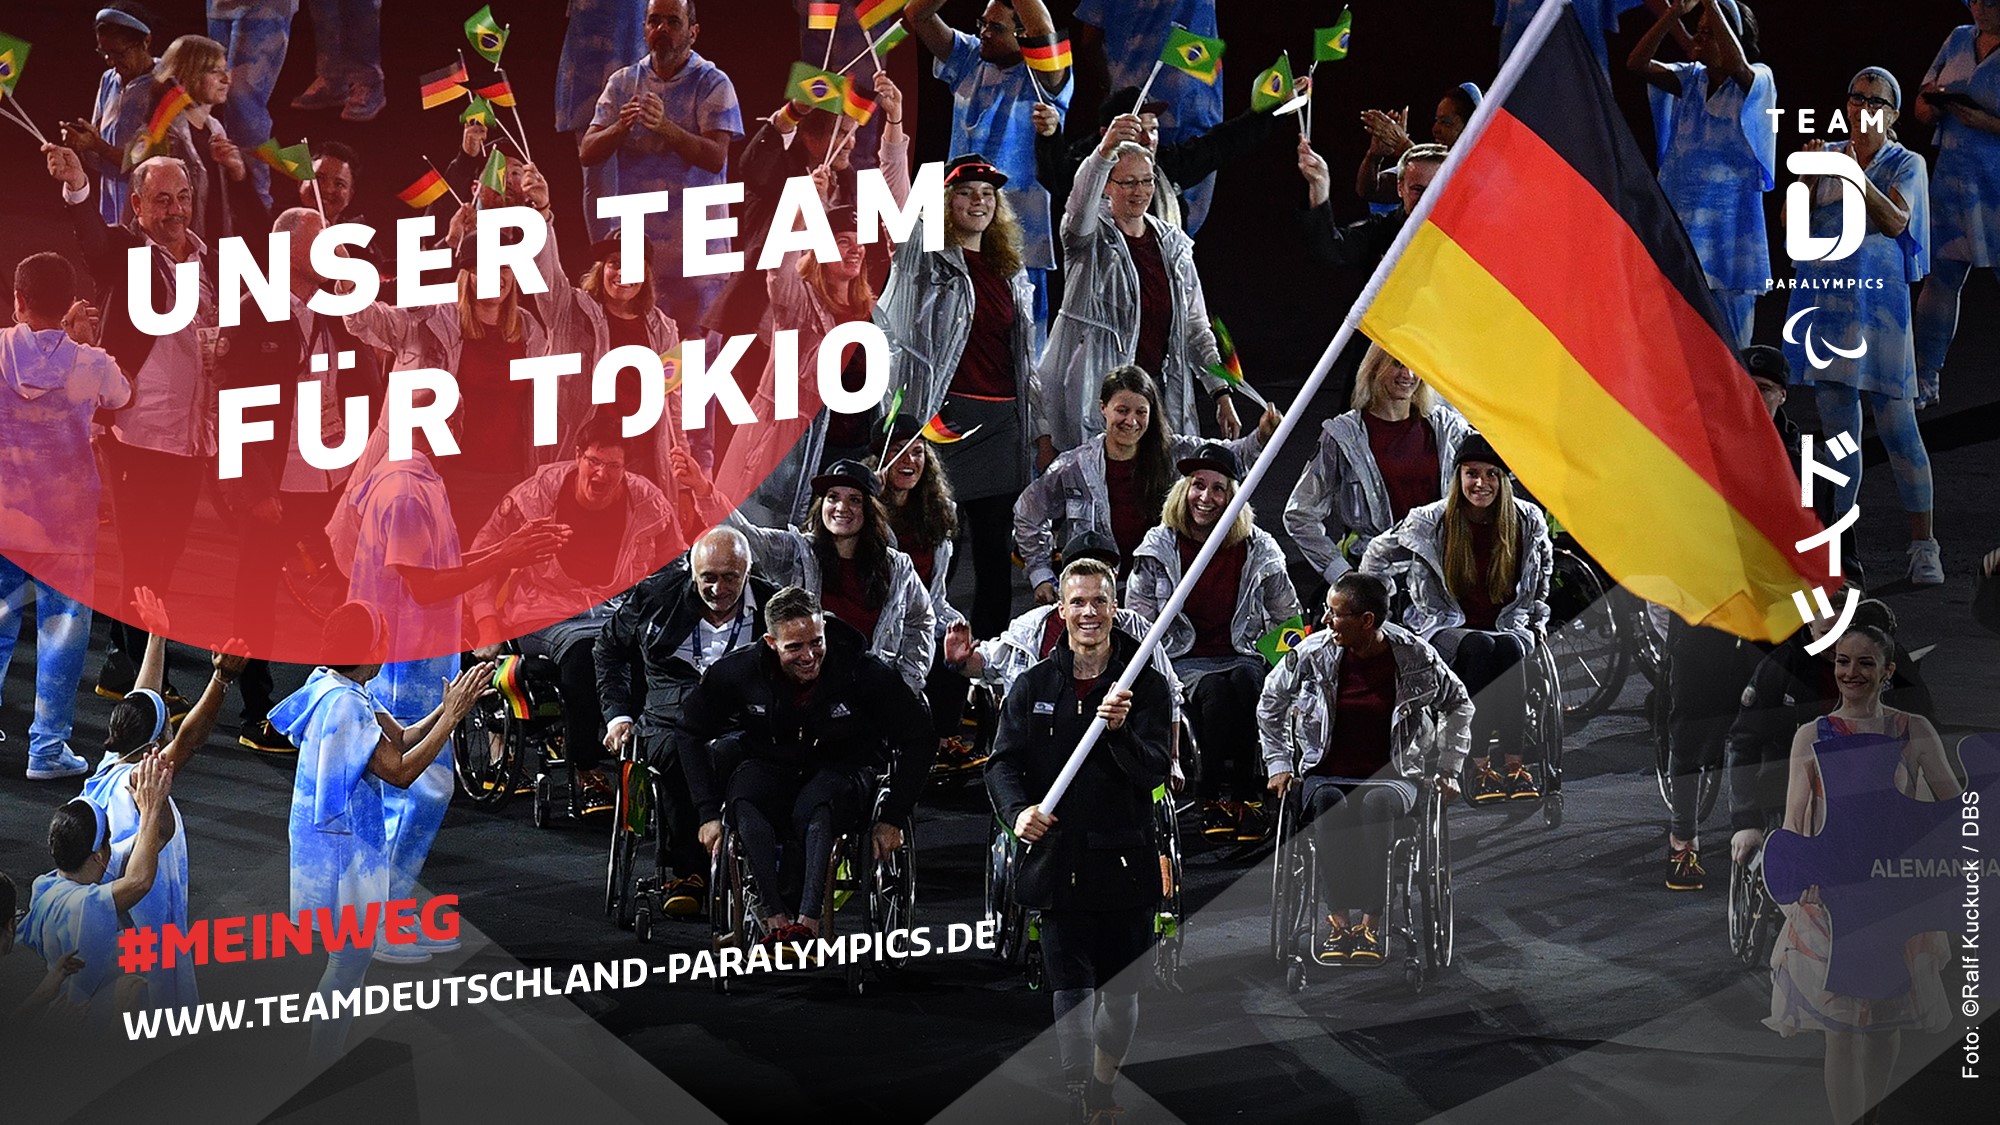 Zahlreiche Para Athlet*innen marschieren mit der deutschen Flagge. In der oberen, linken Ecke steht: Unser Team für Tokio.